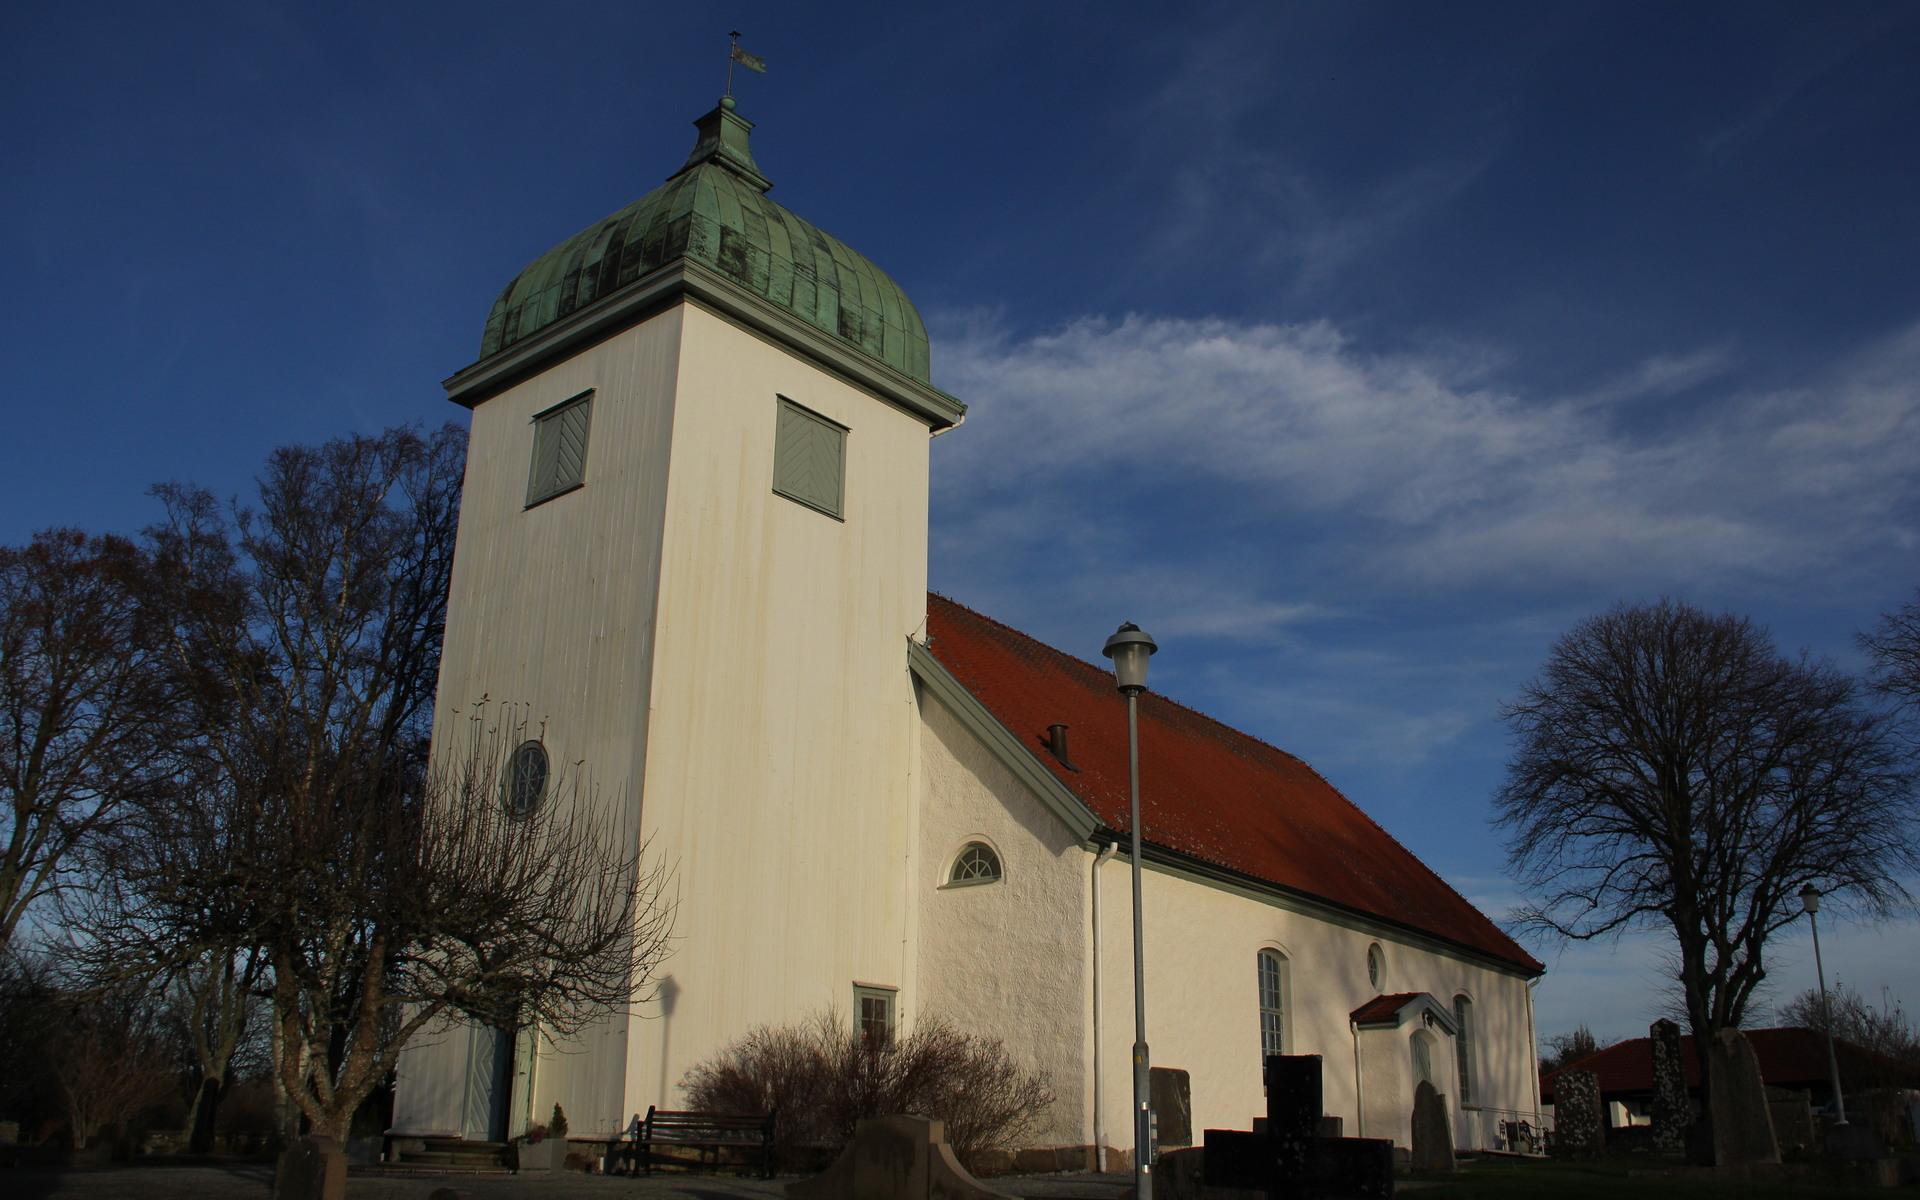 Både Stora Höga och Jörlanda ingår i Jörlanda församling. Den första kyrkan byggdes troligen på 1100-talet, så gammal är kyrkans dopfunt.